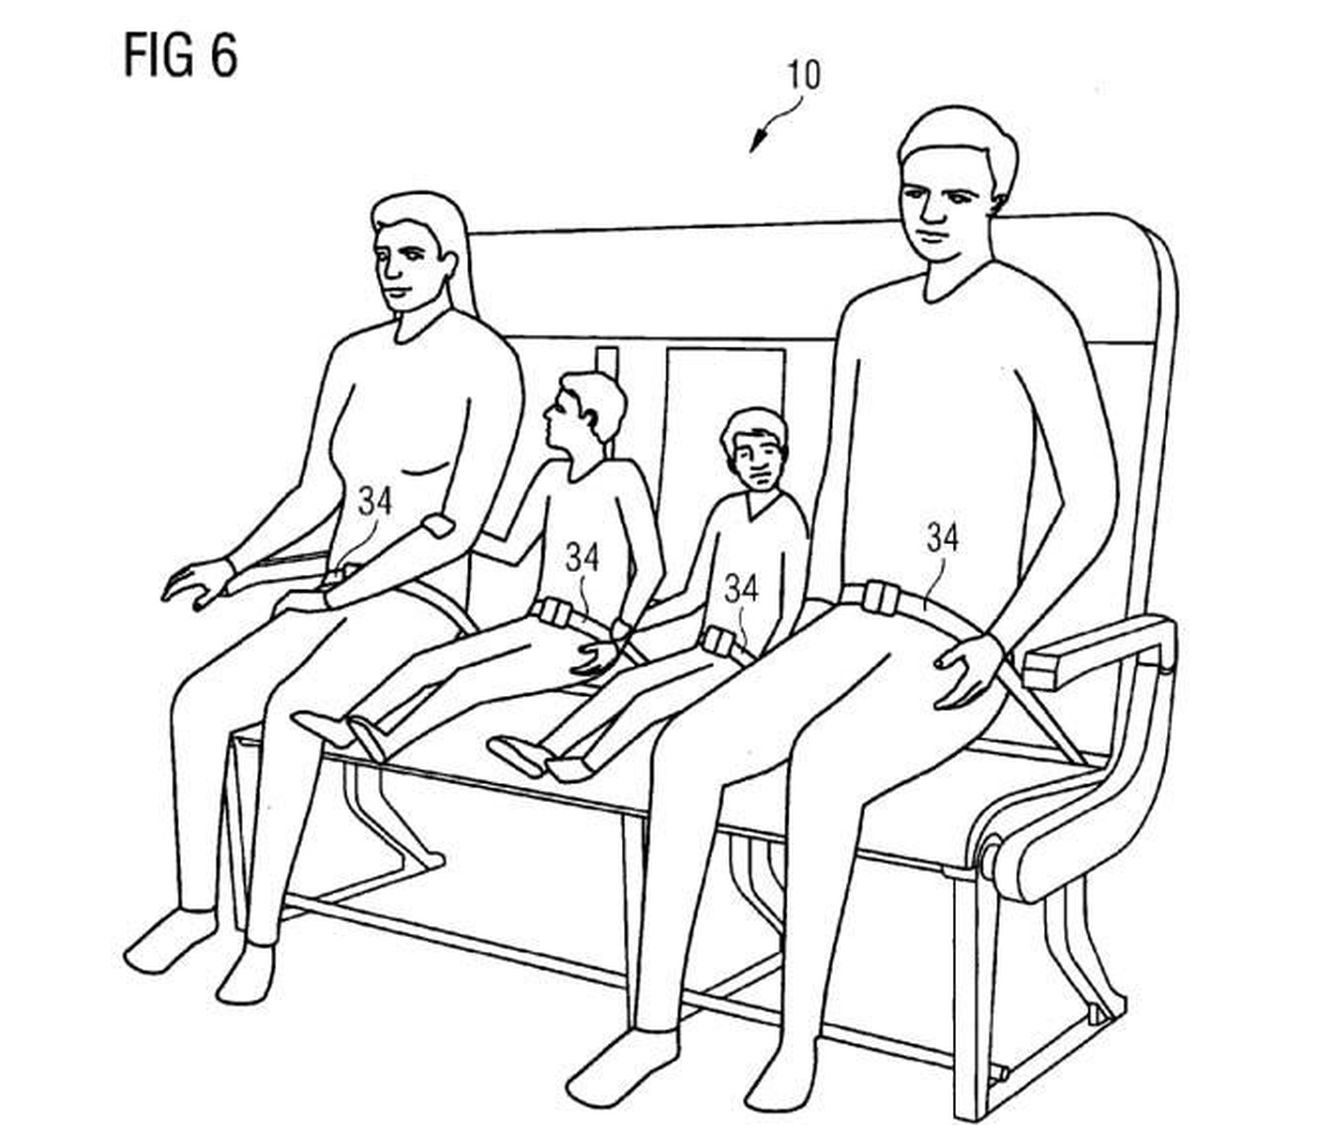 Esta nueva clase de asientos podría ser útil para familias con niños. (Airbus)